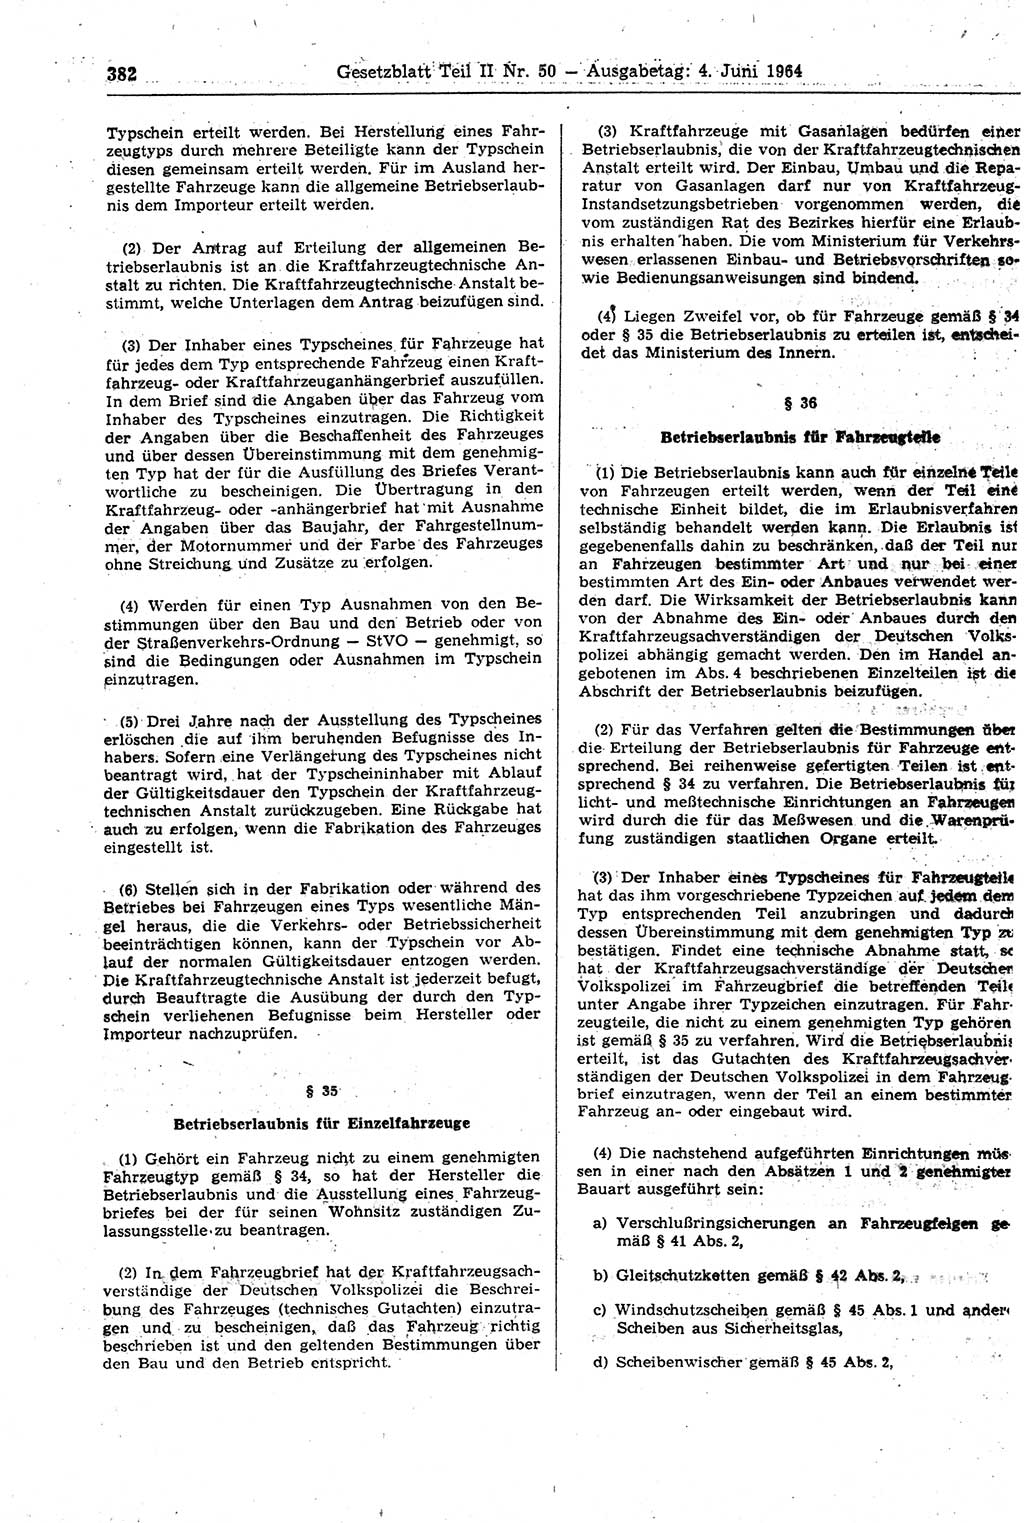 Gesetzblatt (GBl.) der Deutschen Demokratischen Republik (DDR) Teil ⅠⅠ 1964, Seite 382 (GBl. DDR ⅠⅠ 1964, S. 382)